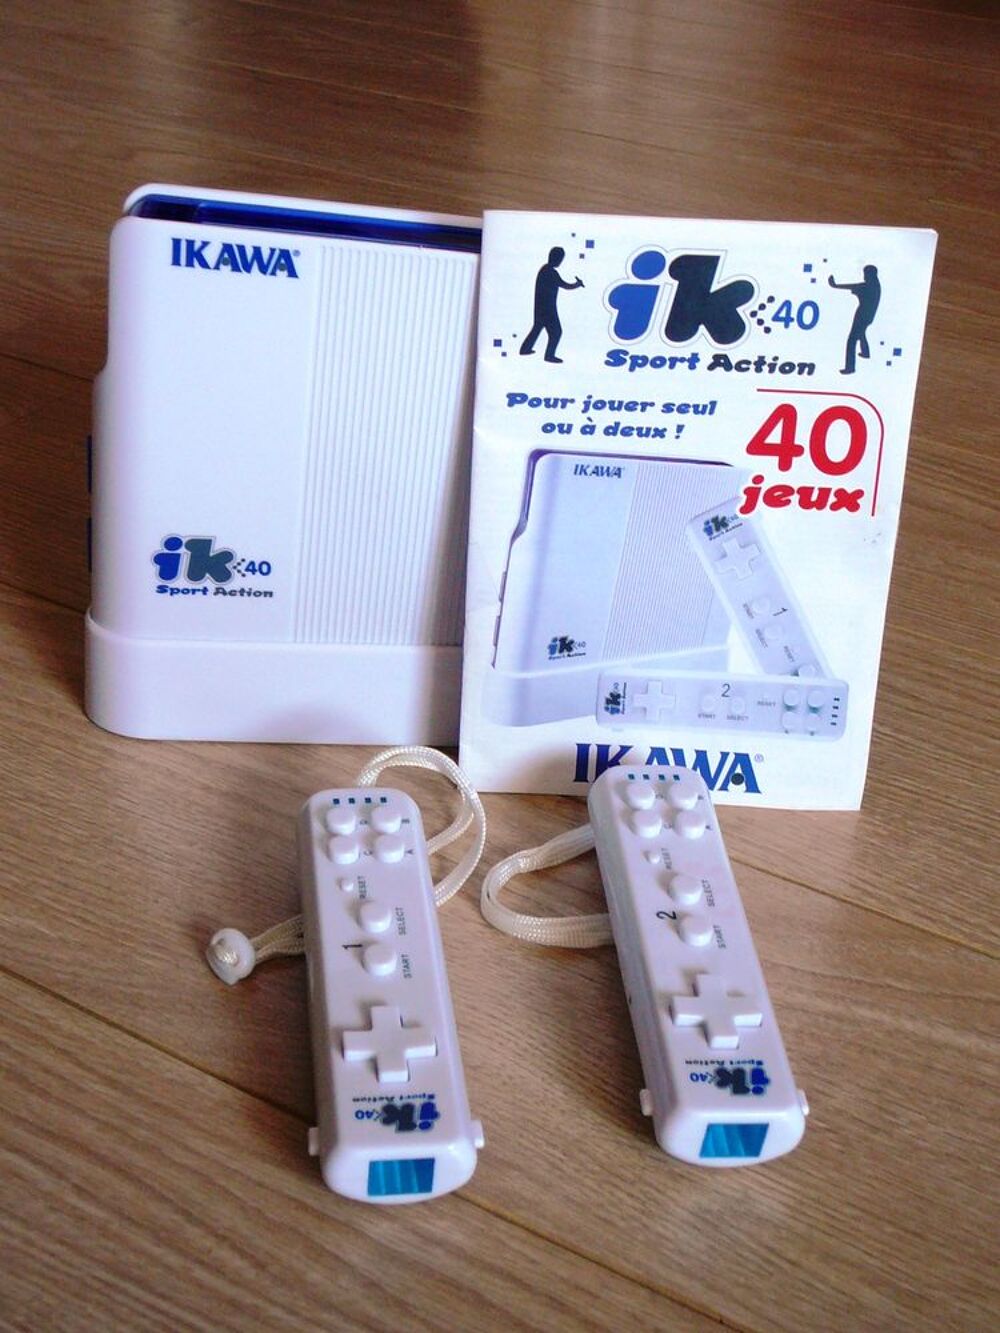 CONSOLE DE JEUX IKAWA IK 40 SPORT ACTION Consoles et jeux vidos